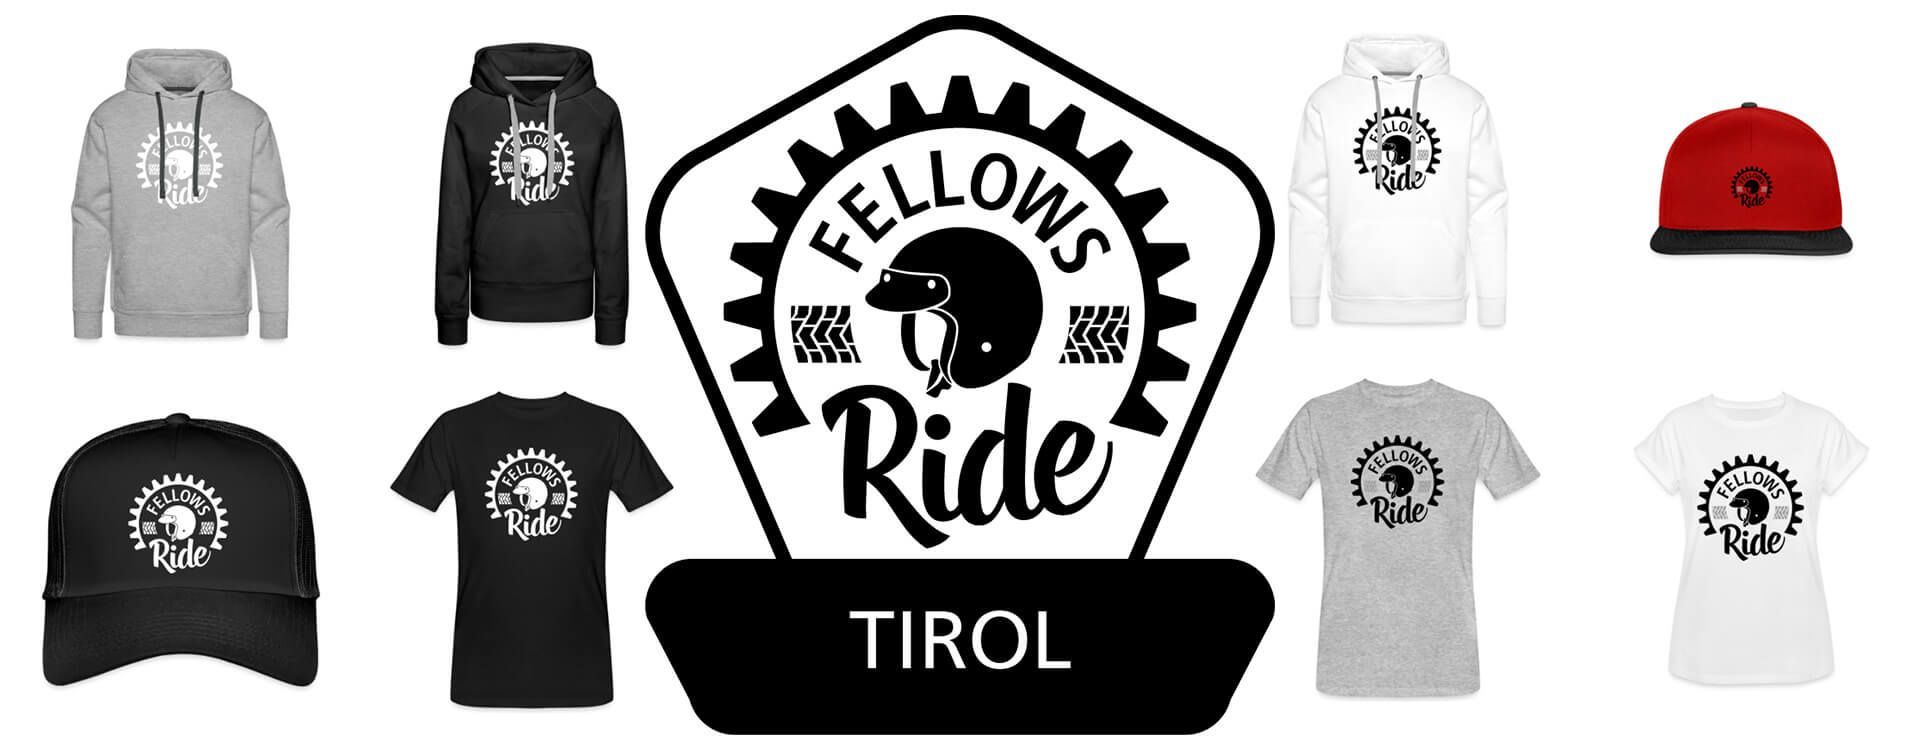 Fellows Ride Tirol Shop